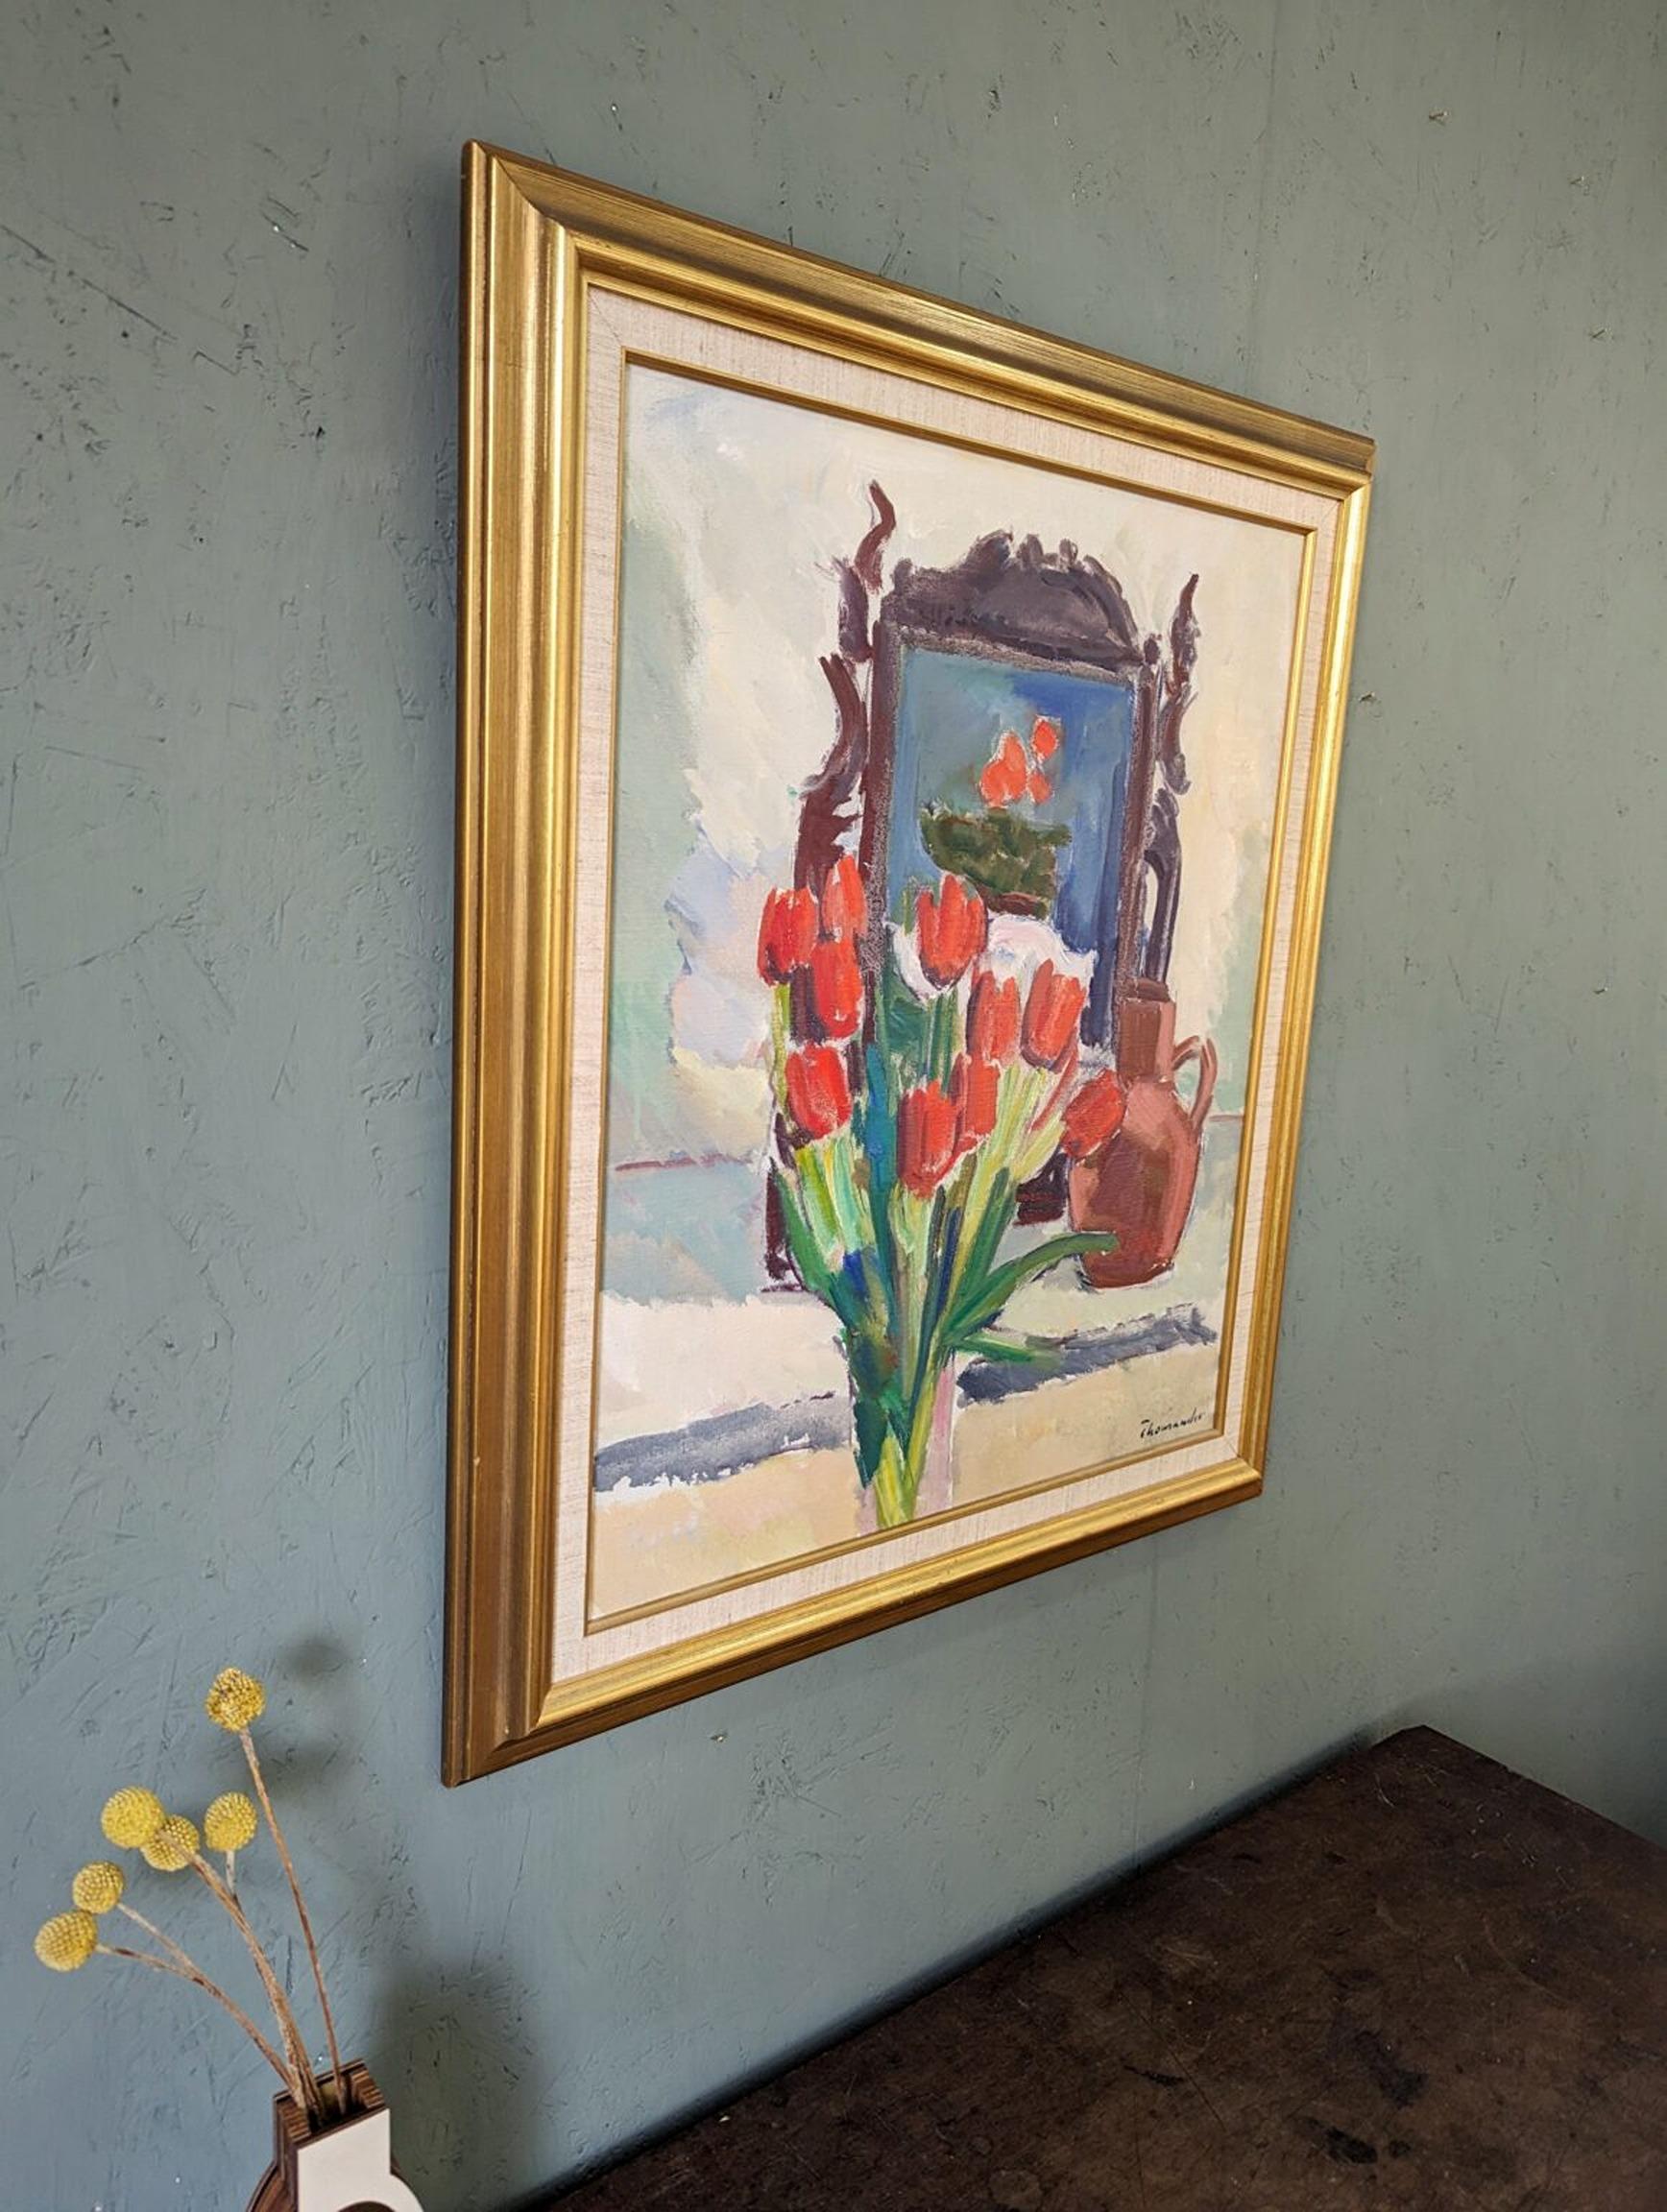 TULIPES ROUGES
Dimensions : 67 x 58 cm (cadre compris)
Huile sur toile

Une captivante et équilibrée composition de nature morte d'intérieur, exécutée à l'huile sur toile.

À première vue, un vase de tulipes rouges au premier plan attire notre